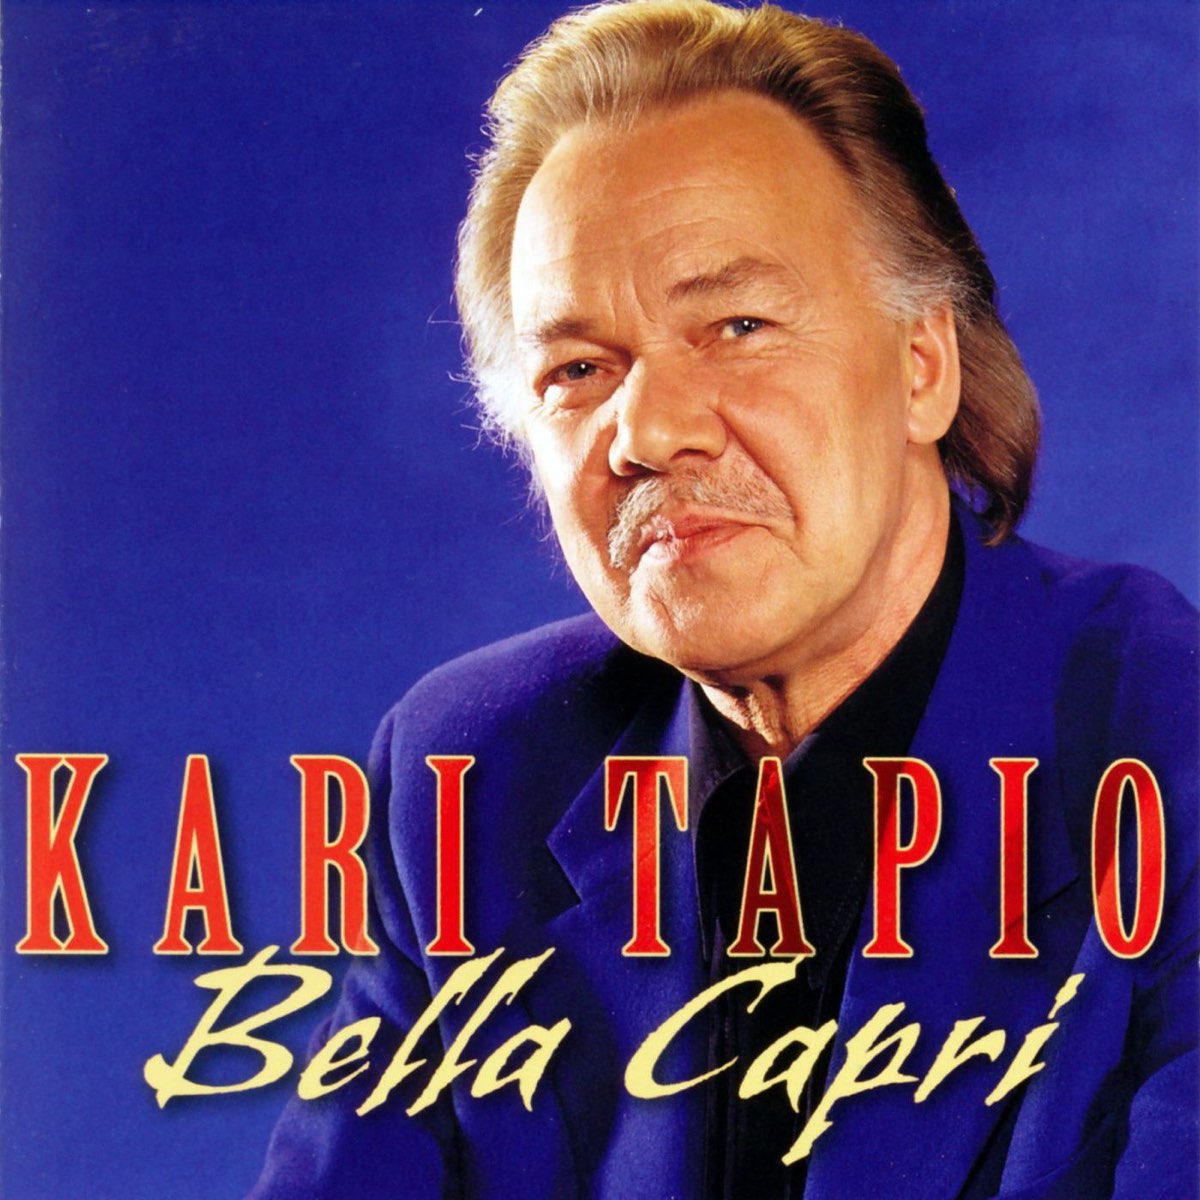 Bella Capri by Kari Tapio on Apple Music